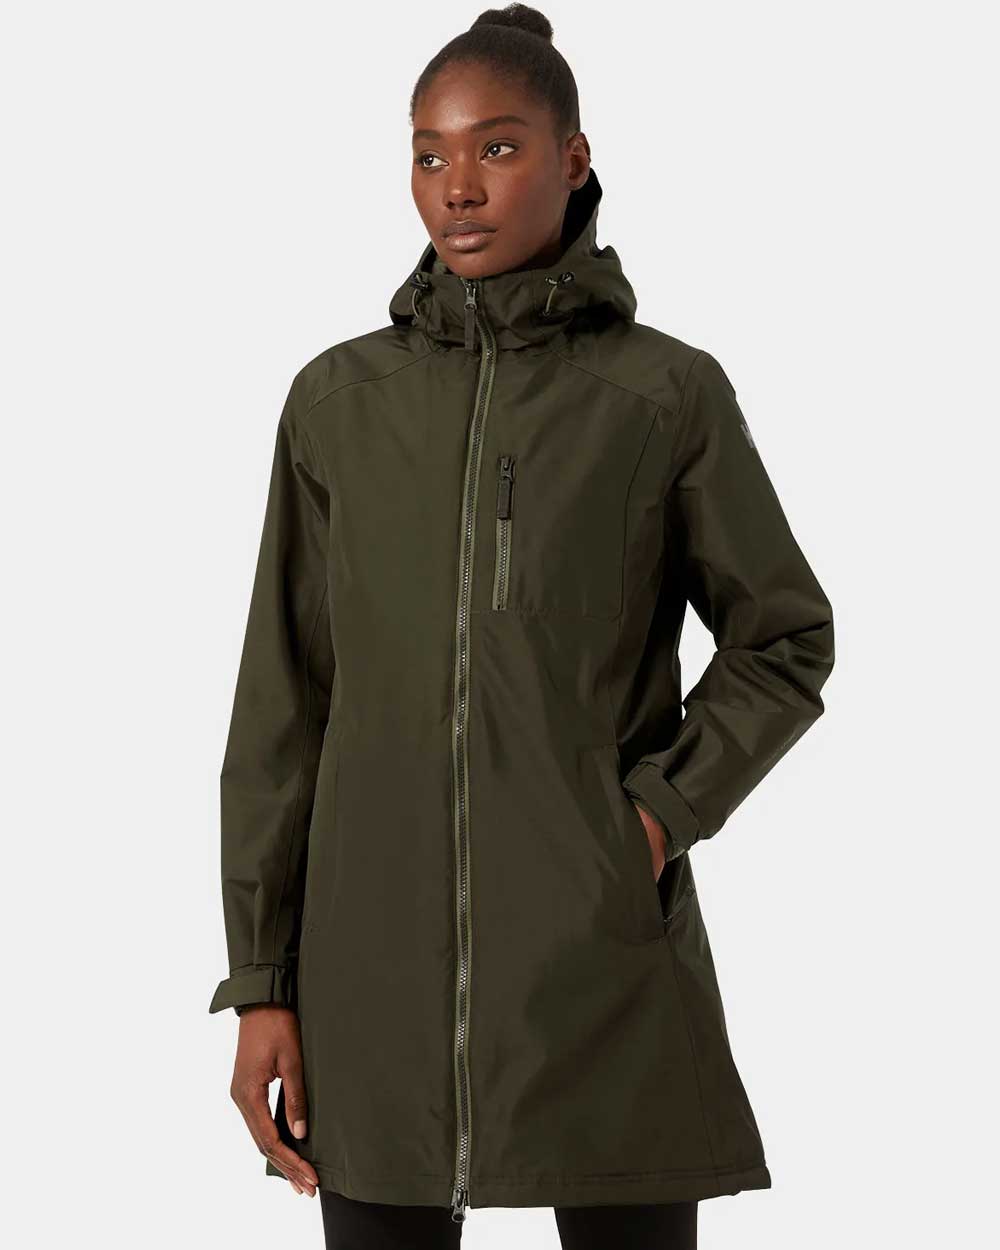 Women's Long Waterproof Coats